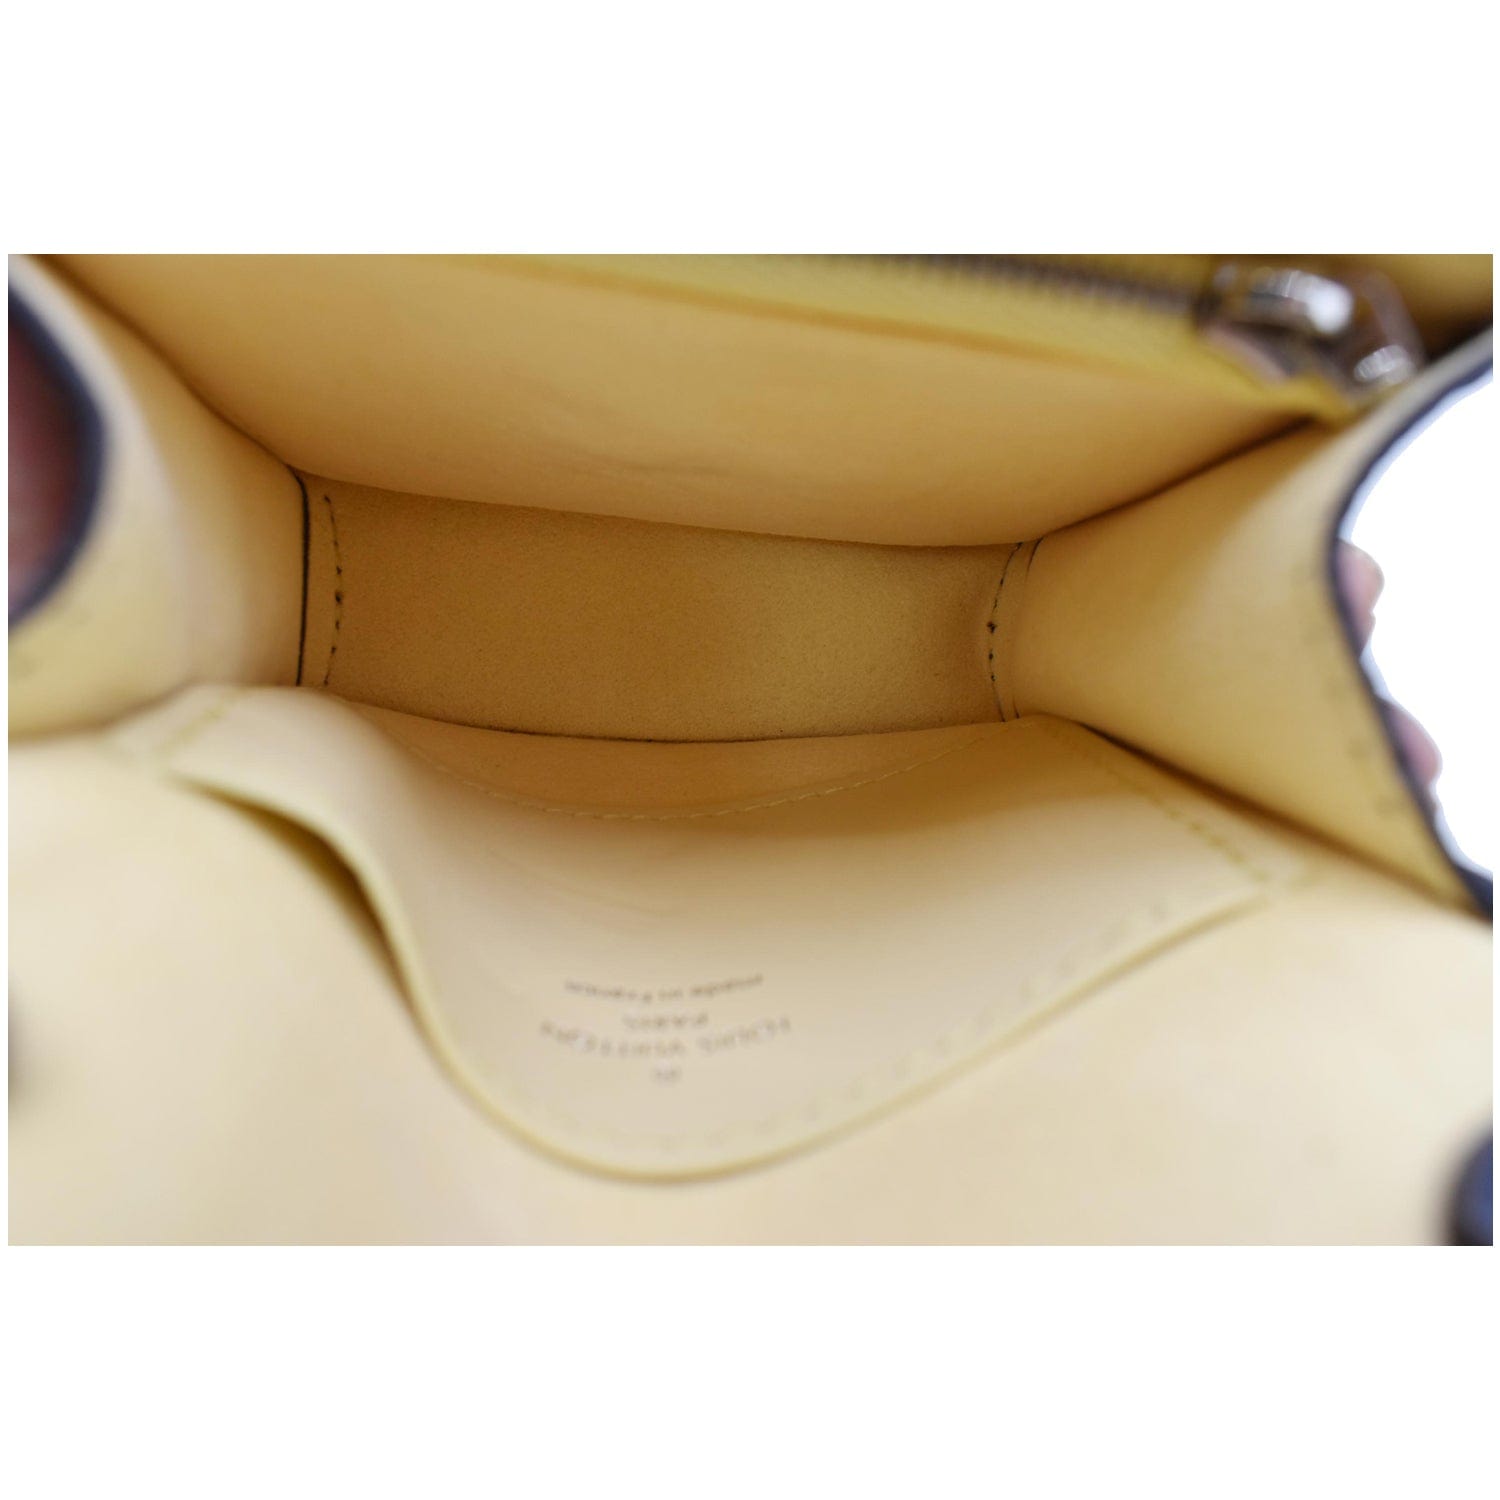 Louis Vuitton Dauphine Shoulder Bag Damier Monogram LV Pop Canvas